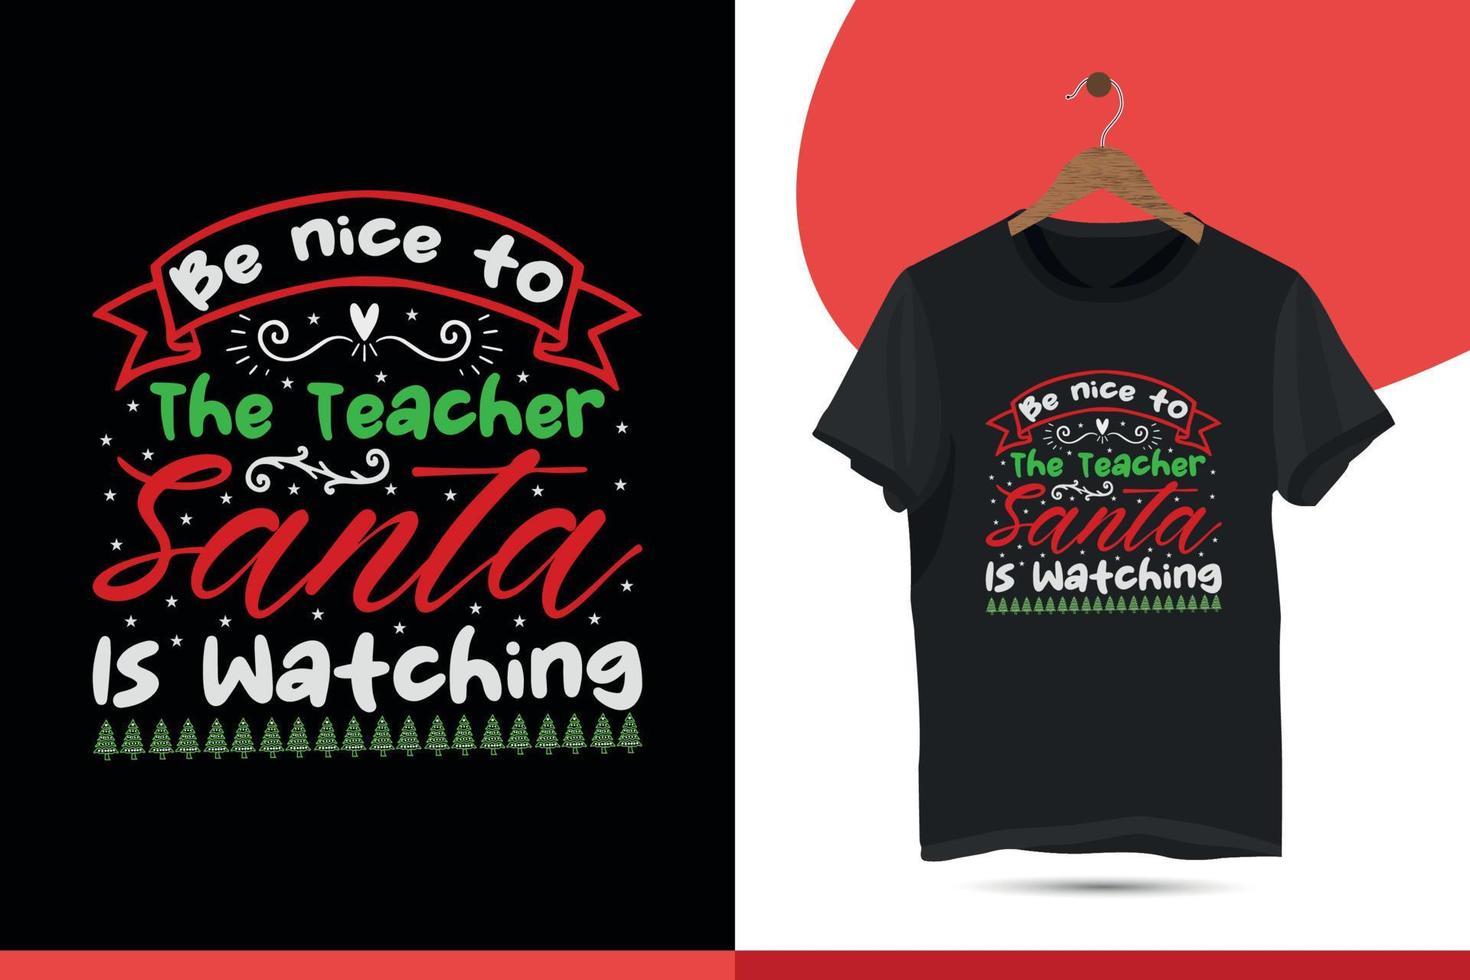 Kerstmis typografie t-shirt ontwerp voor lelijk trui Kerstmis feest. vakantie decor met Kerstmis boom, de kerstman, peperkoek teksten, en ornamenten. afdrukken, vector illustratie achtergrond.